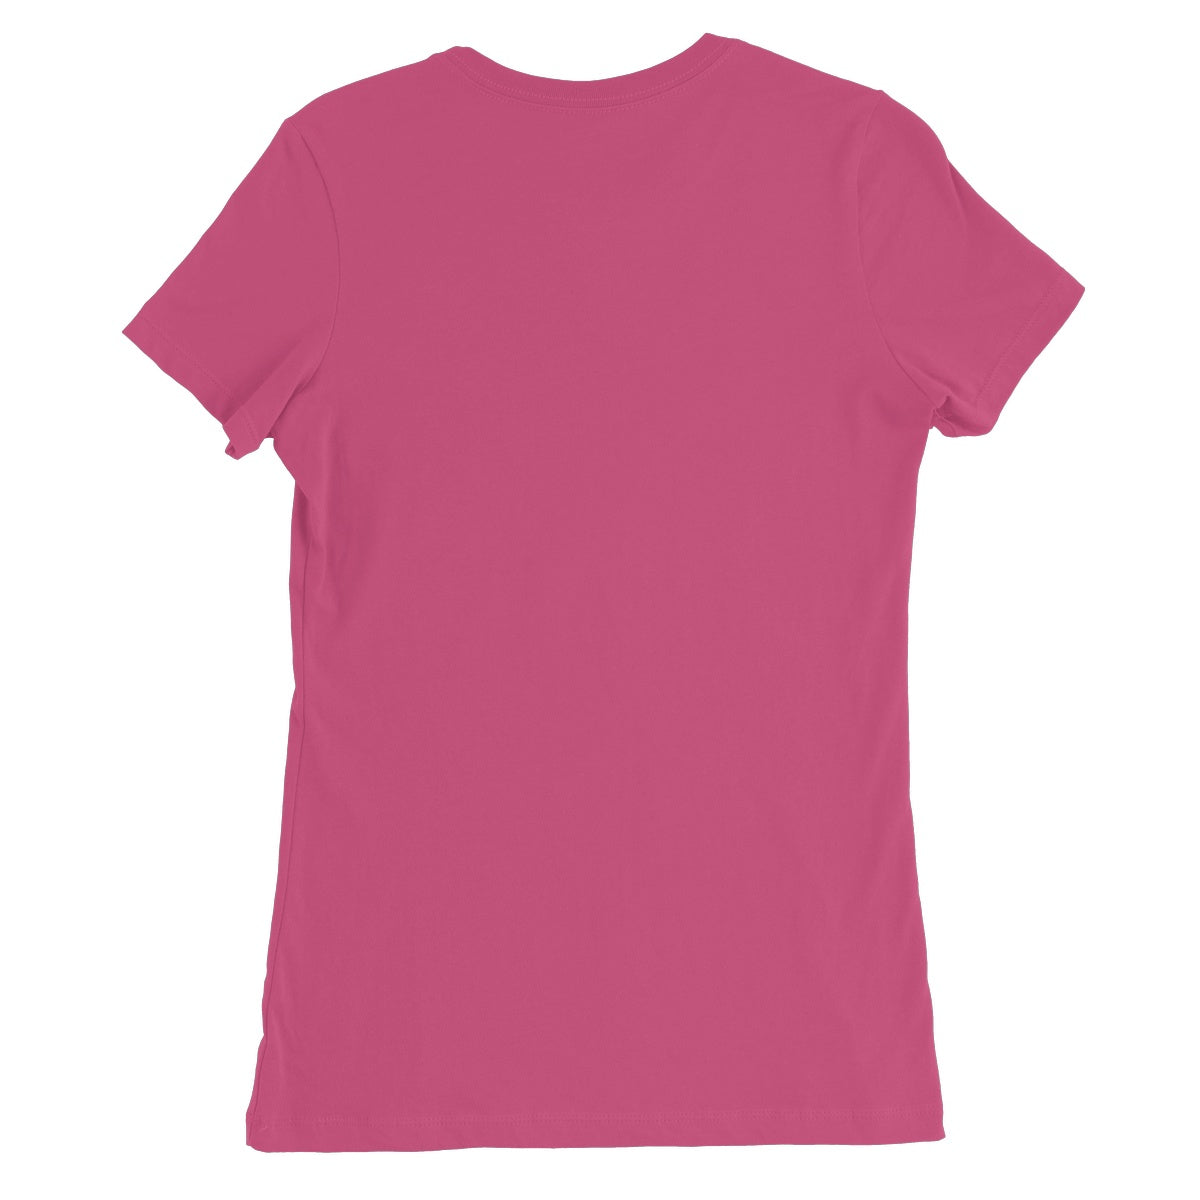 AQUA B&W - 02 - Jellyfish - Women's Fine Jersey T-Shirt